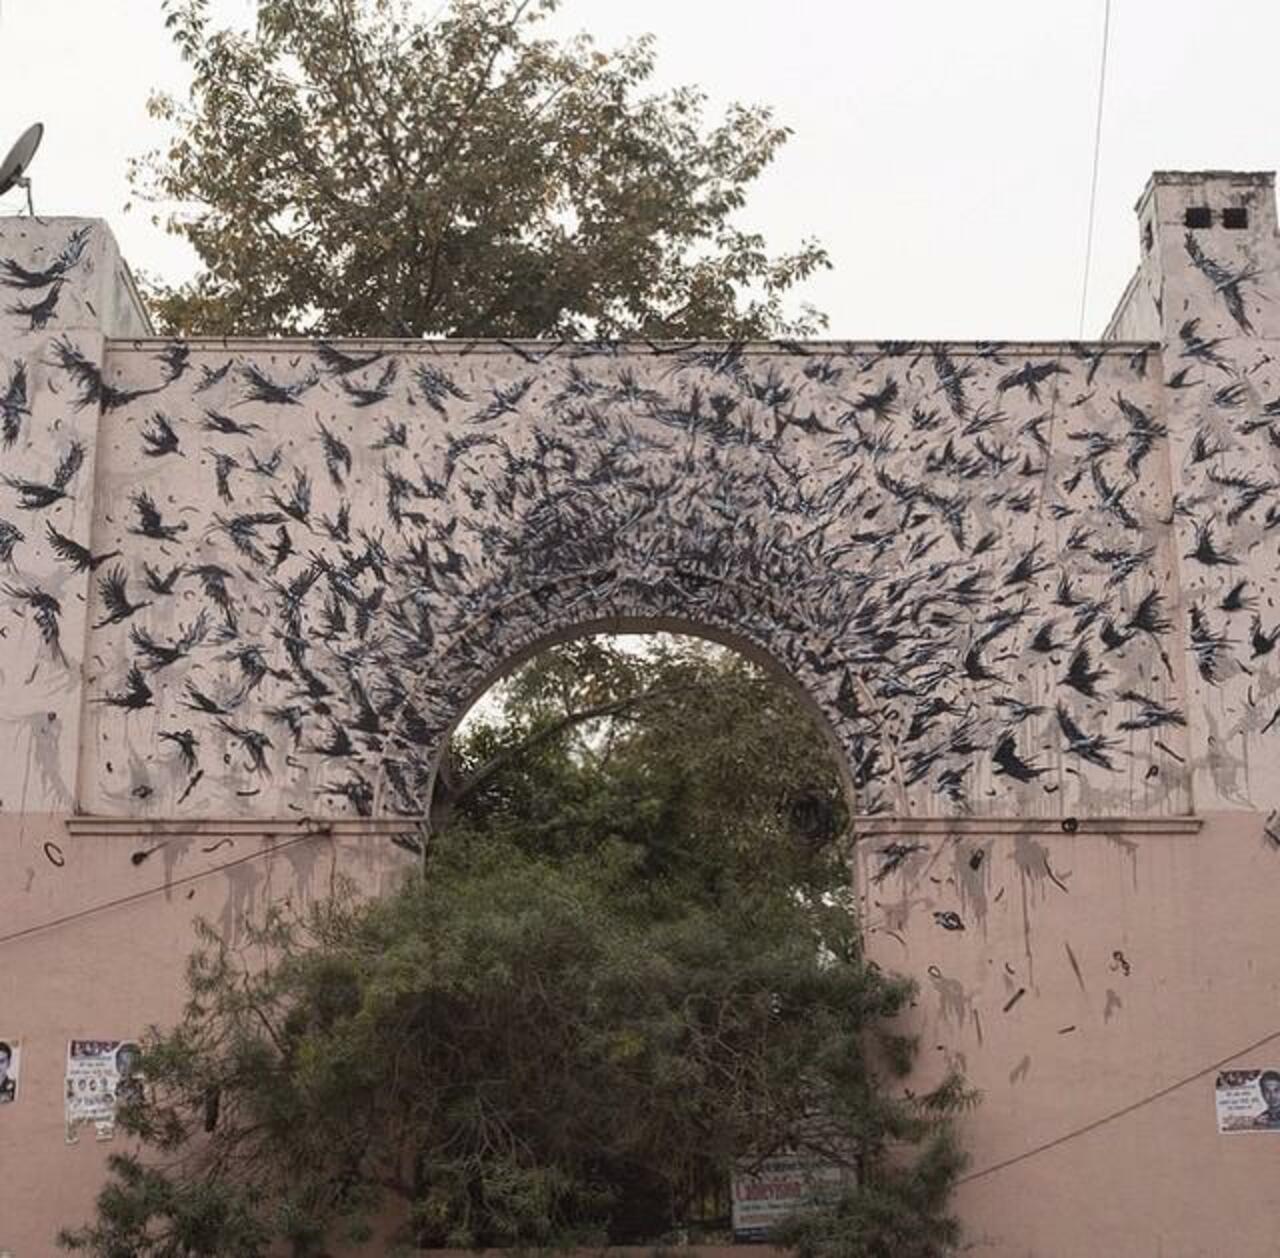 When Street Art meets Nature by DALeast in Delhi, India 

#art #arte #graffiti #streetart http://t.co/GJlrr8NTVg